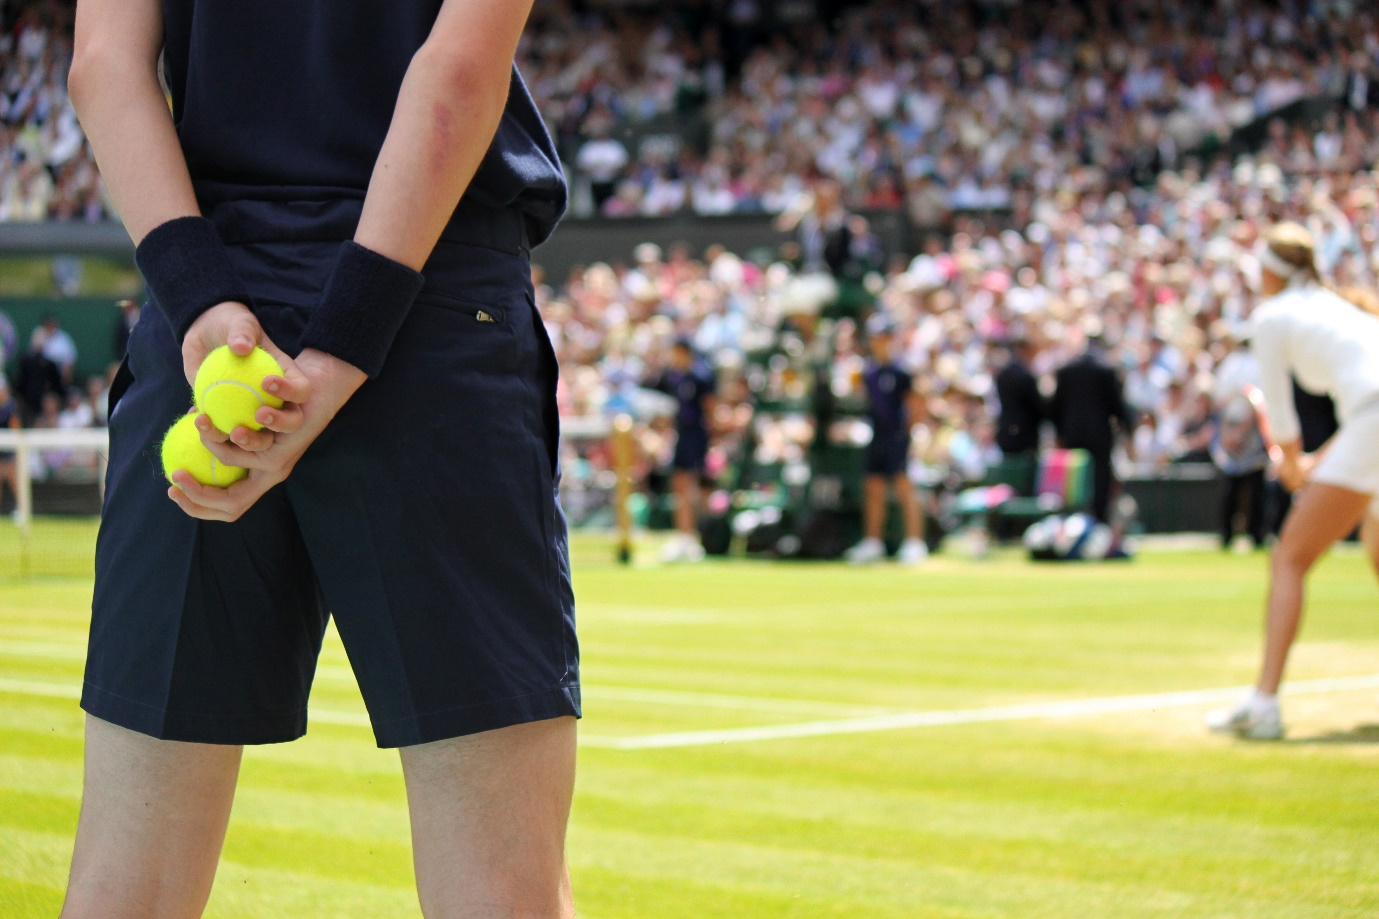 a ball boy in a tennis tournament